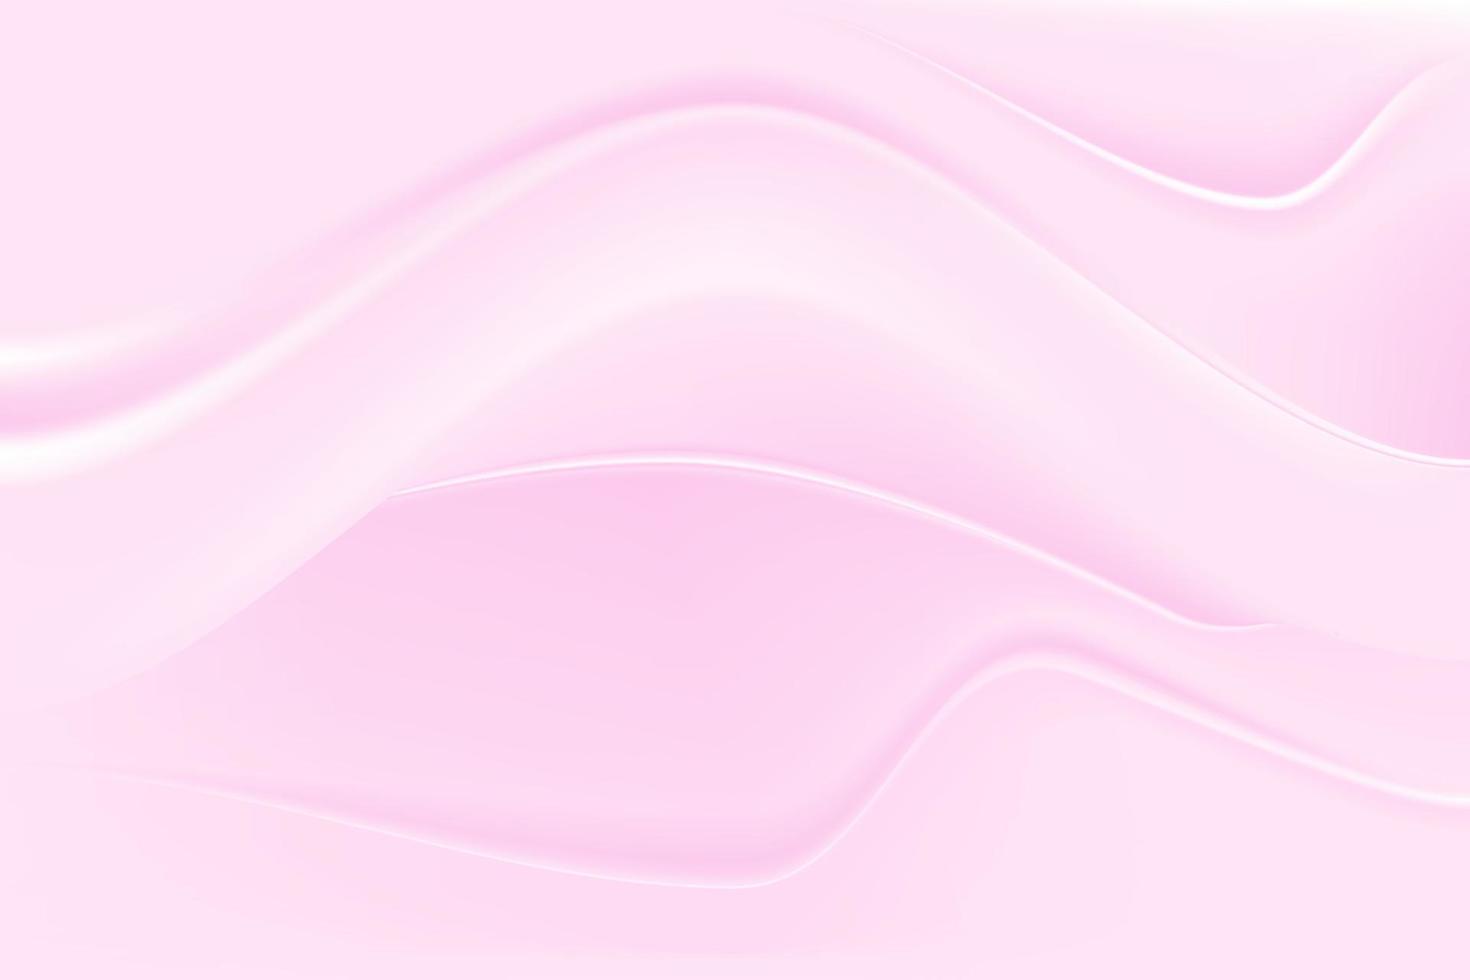 texture de tissu rose vague ombre douce. fond de tissu froissé. vecteur d'illustration